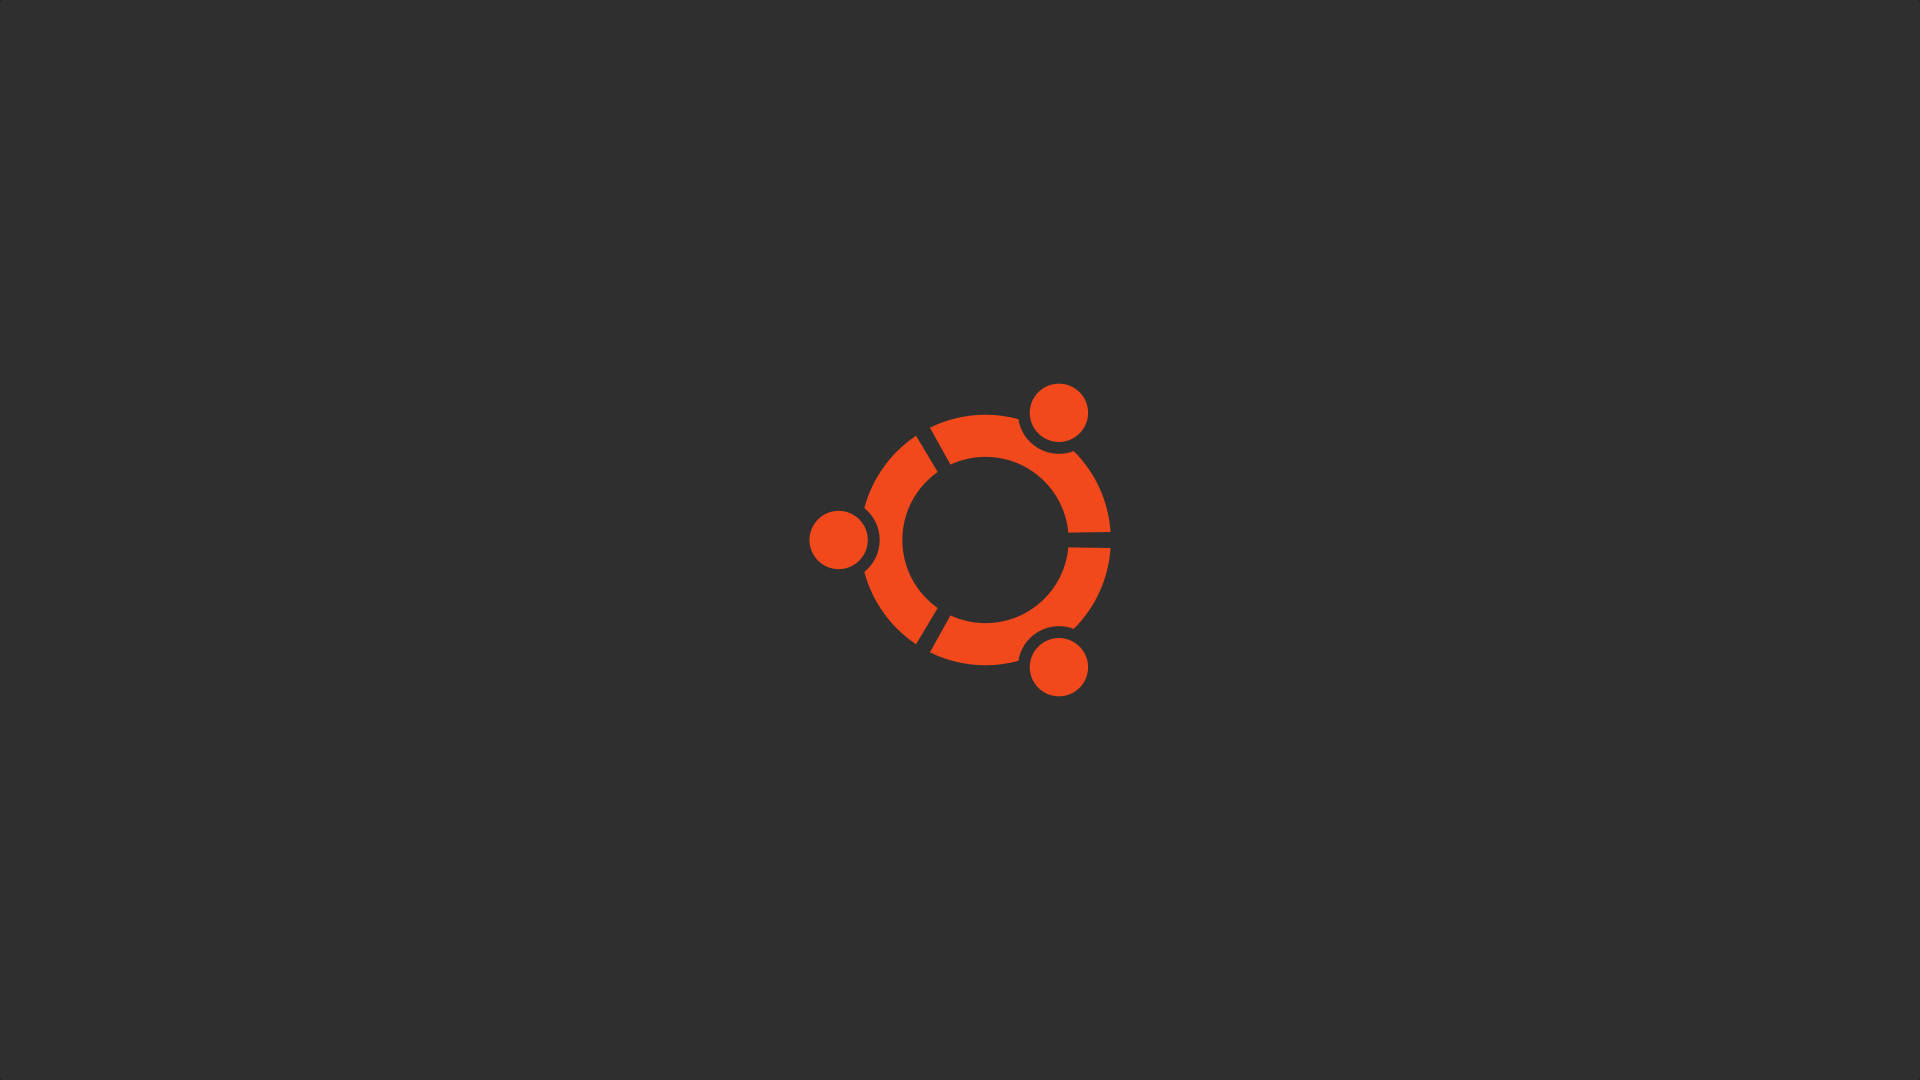 Ubuntu Orange Circle Logo Wallpaper